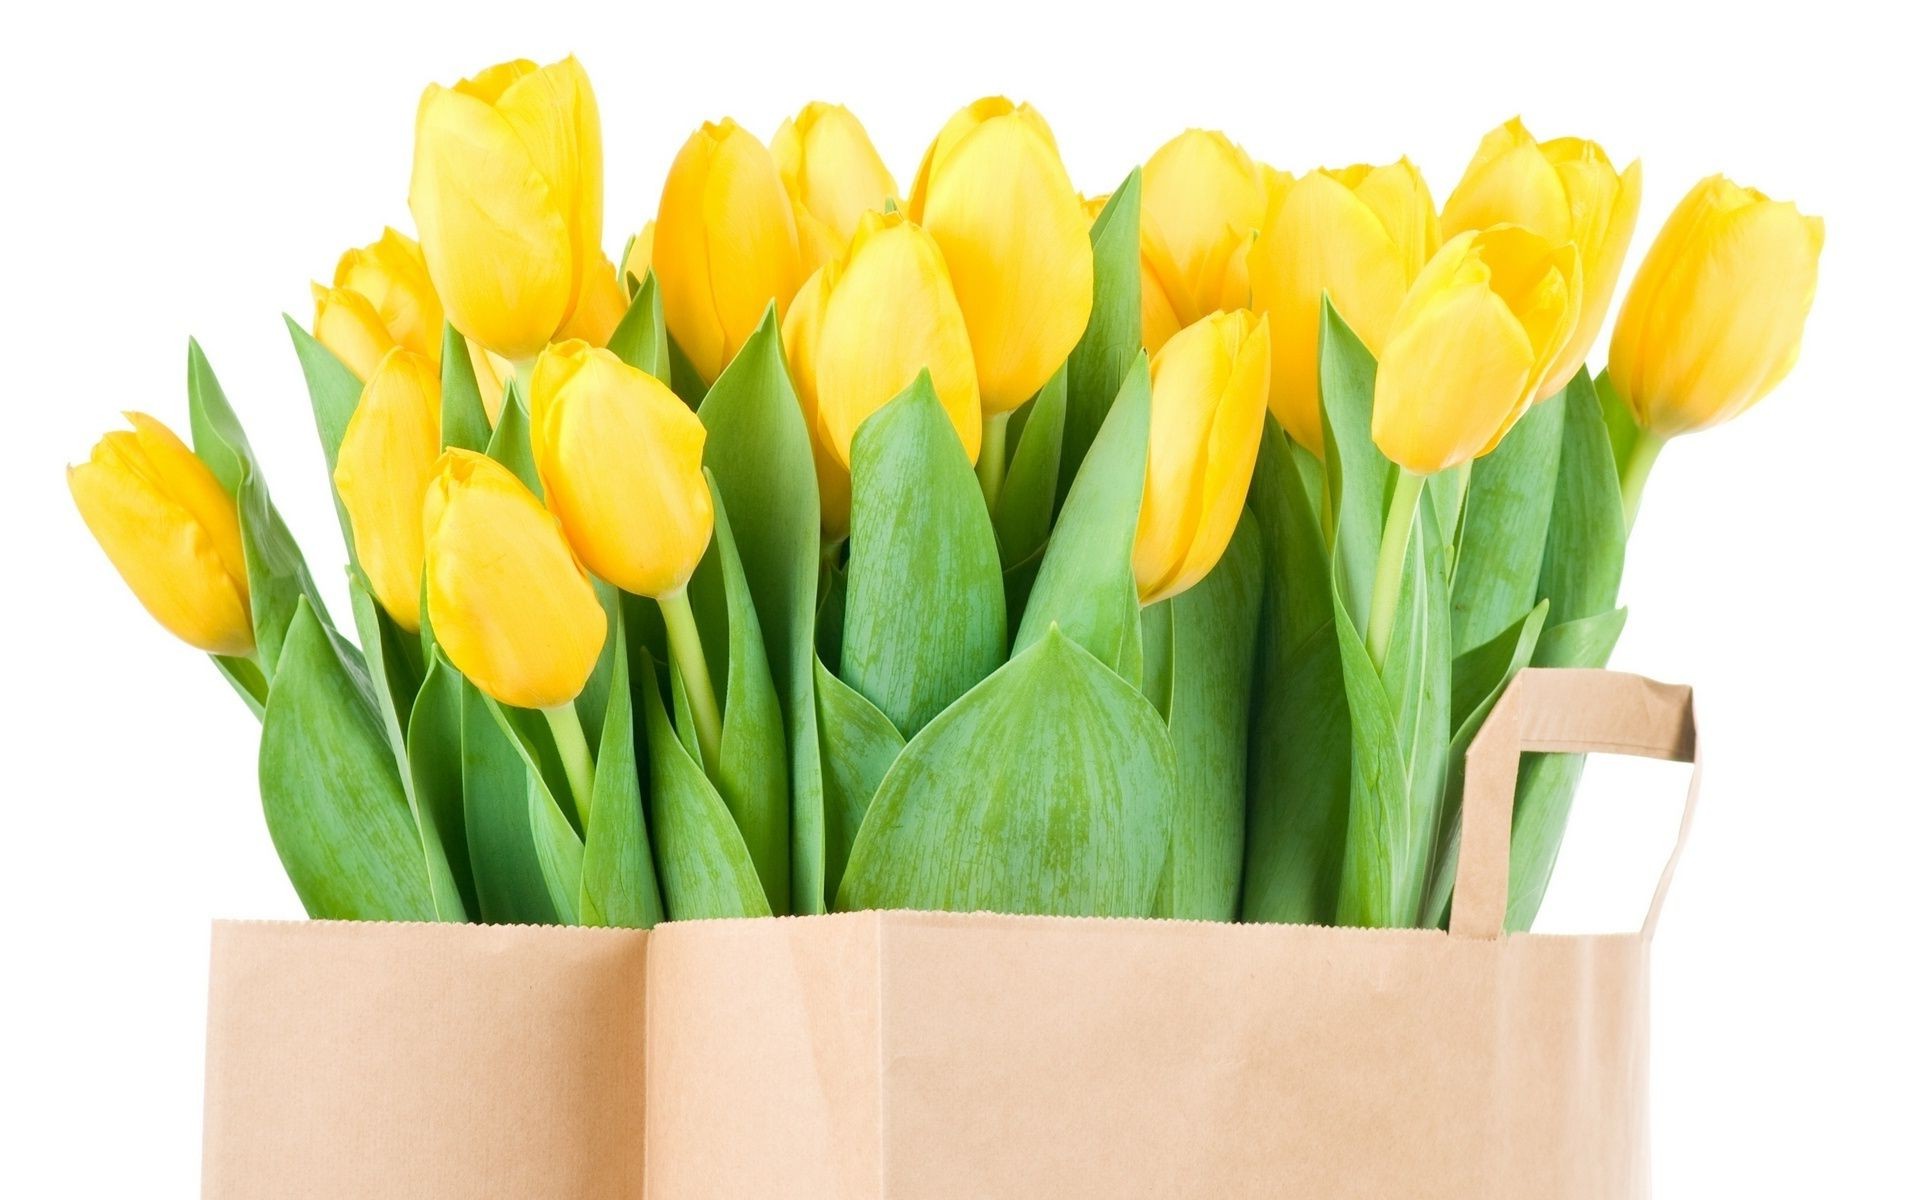 тюльпаны пасха тюльпан природа изолированные букет лист яркий подарок романтика кластер любовь флора цветочные лузга цветок